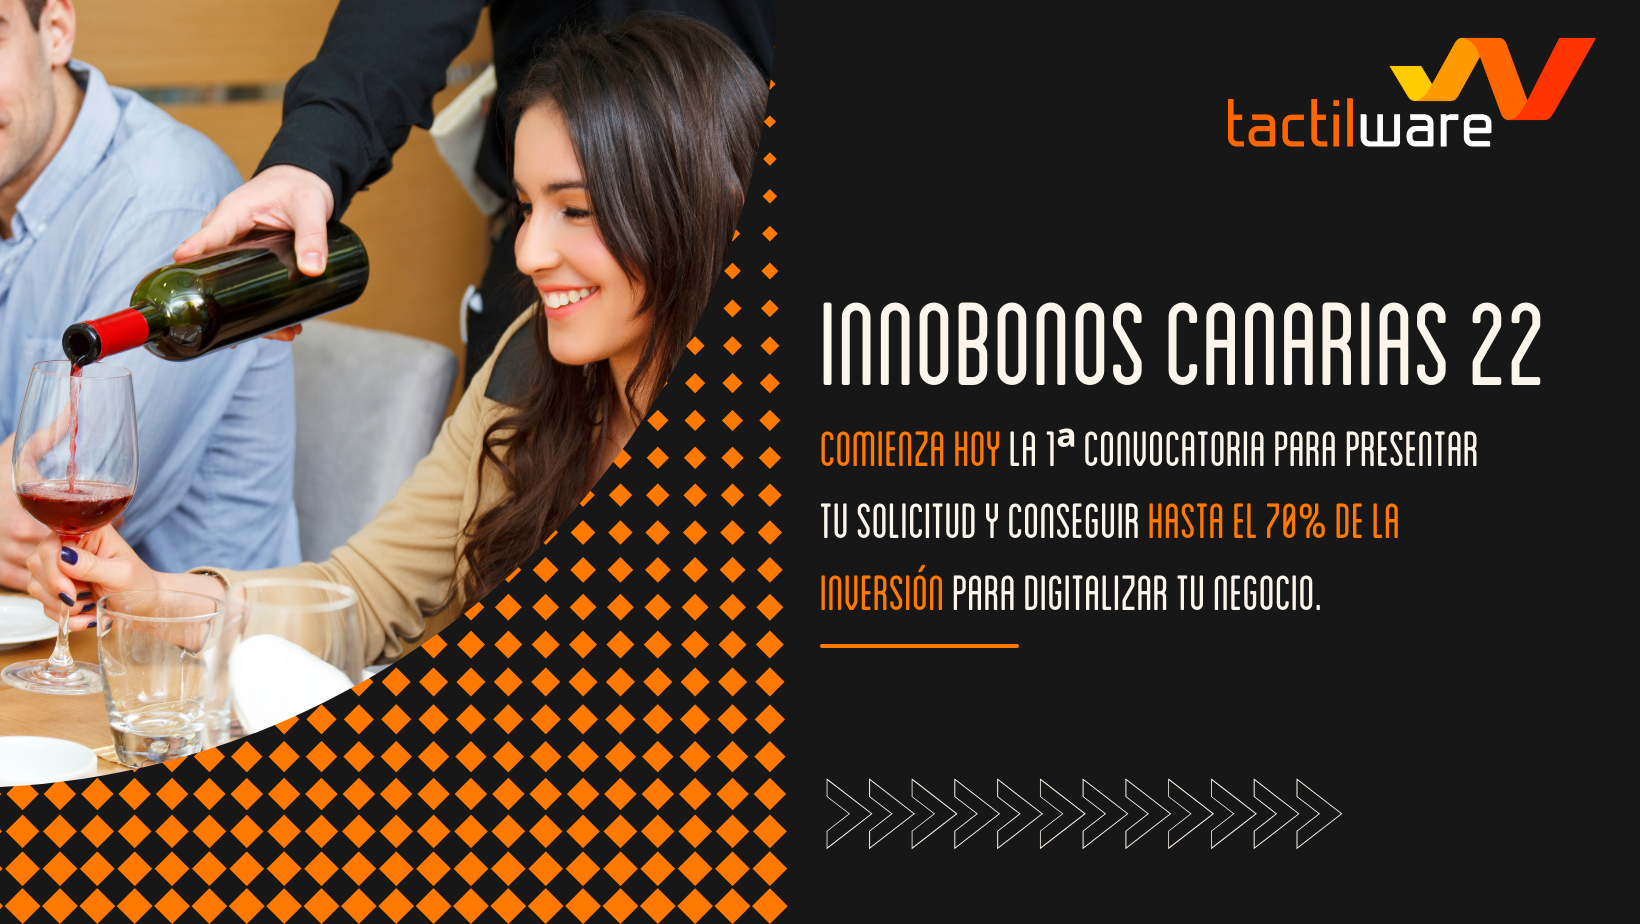 INNOBONOS Canarias 2022: Comienza hoy la 1ª convocatoria para presentar tu solicitud y conseguir hasta el 70% de la inversión para digitalizar tu negocio.